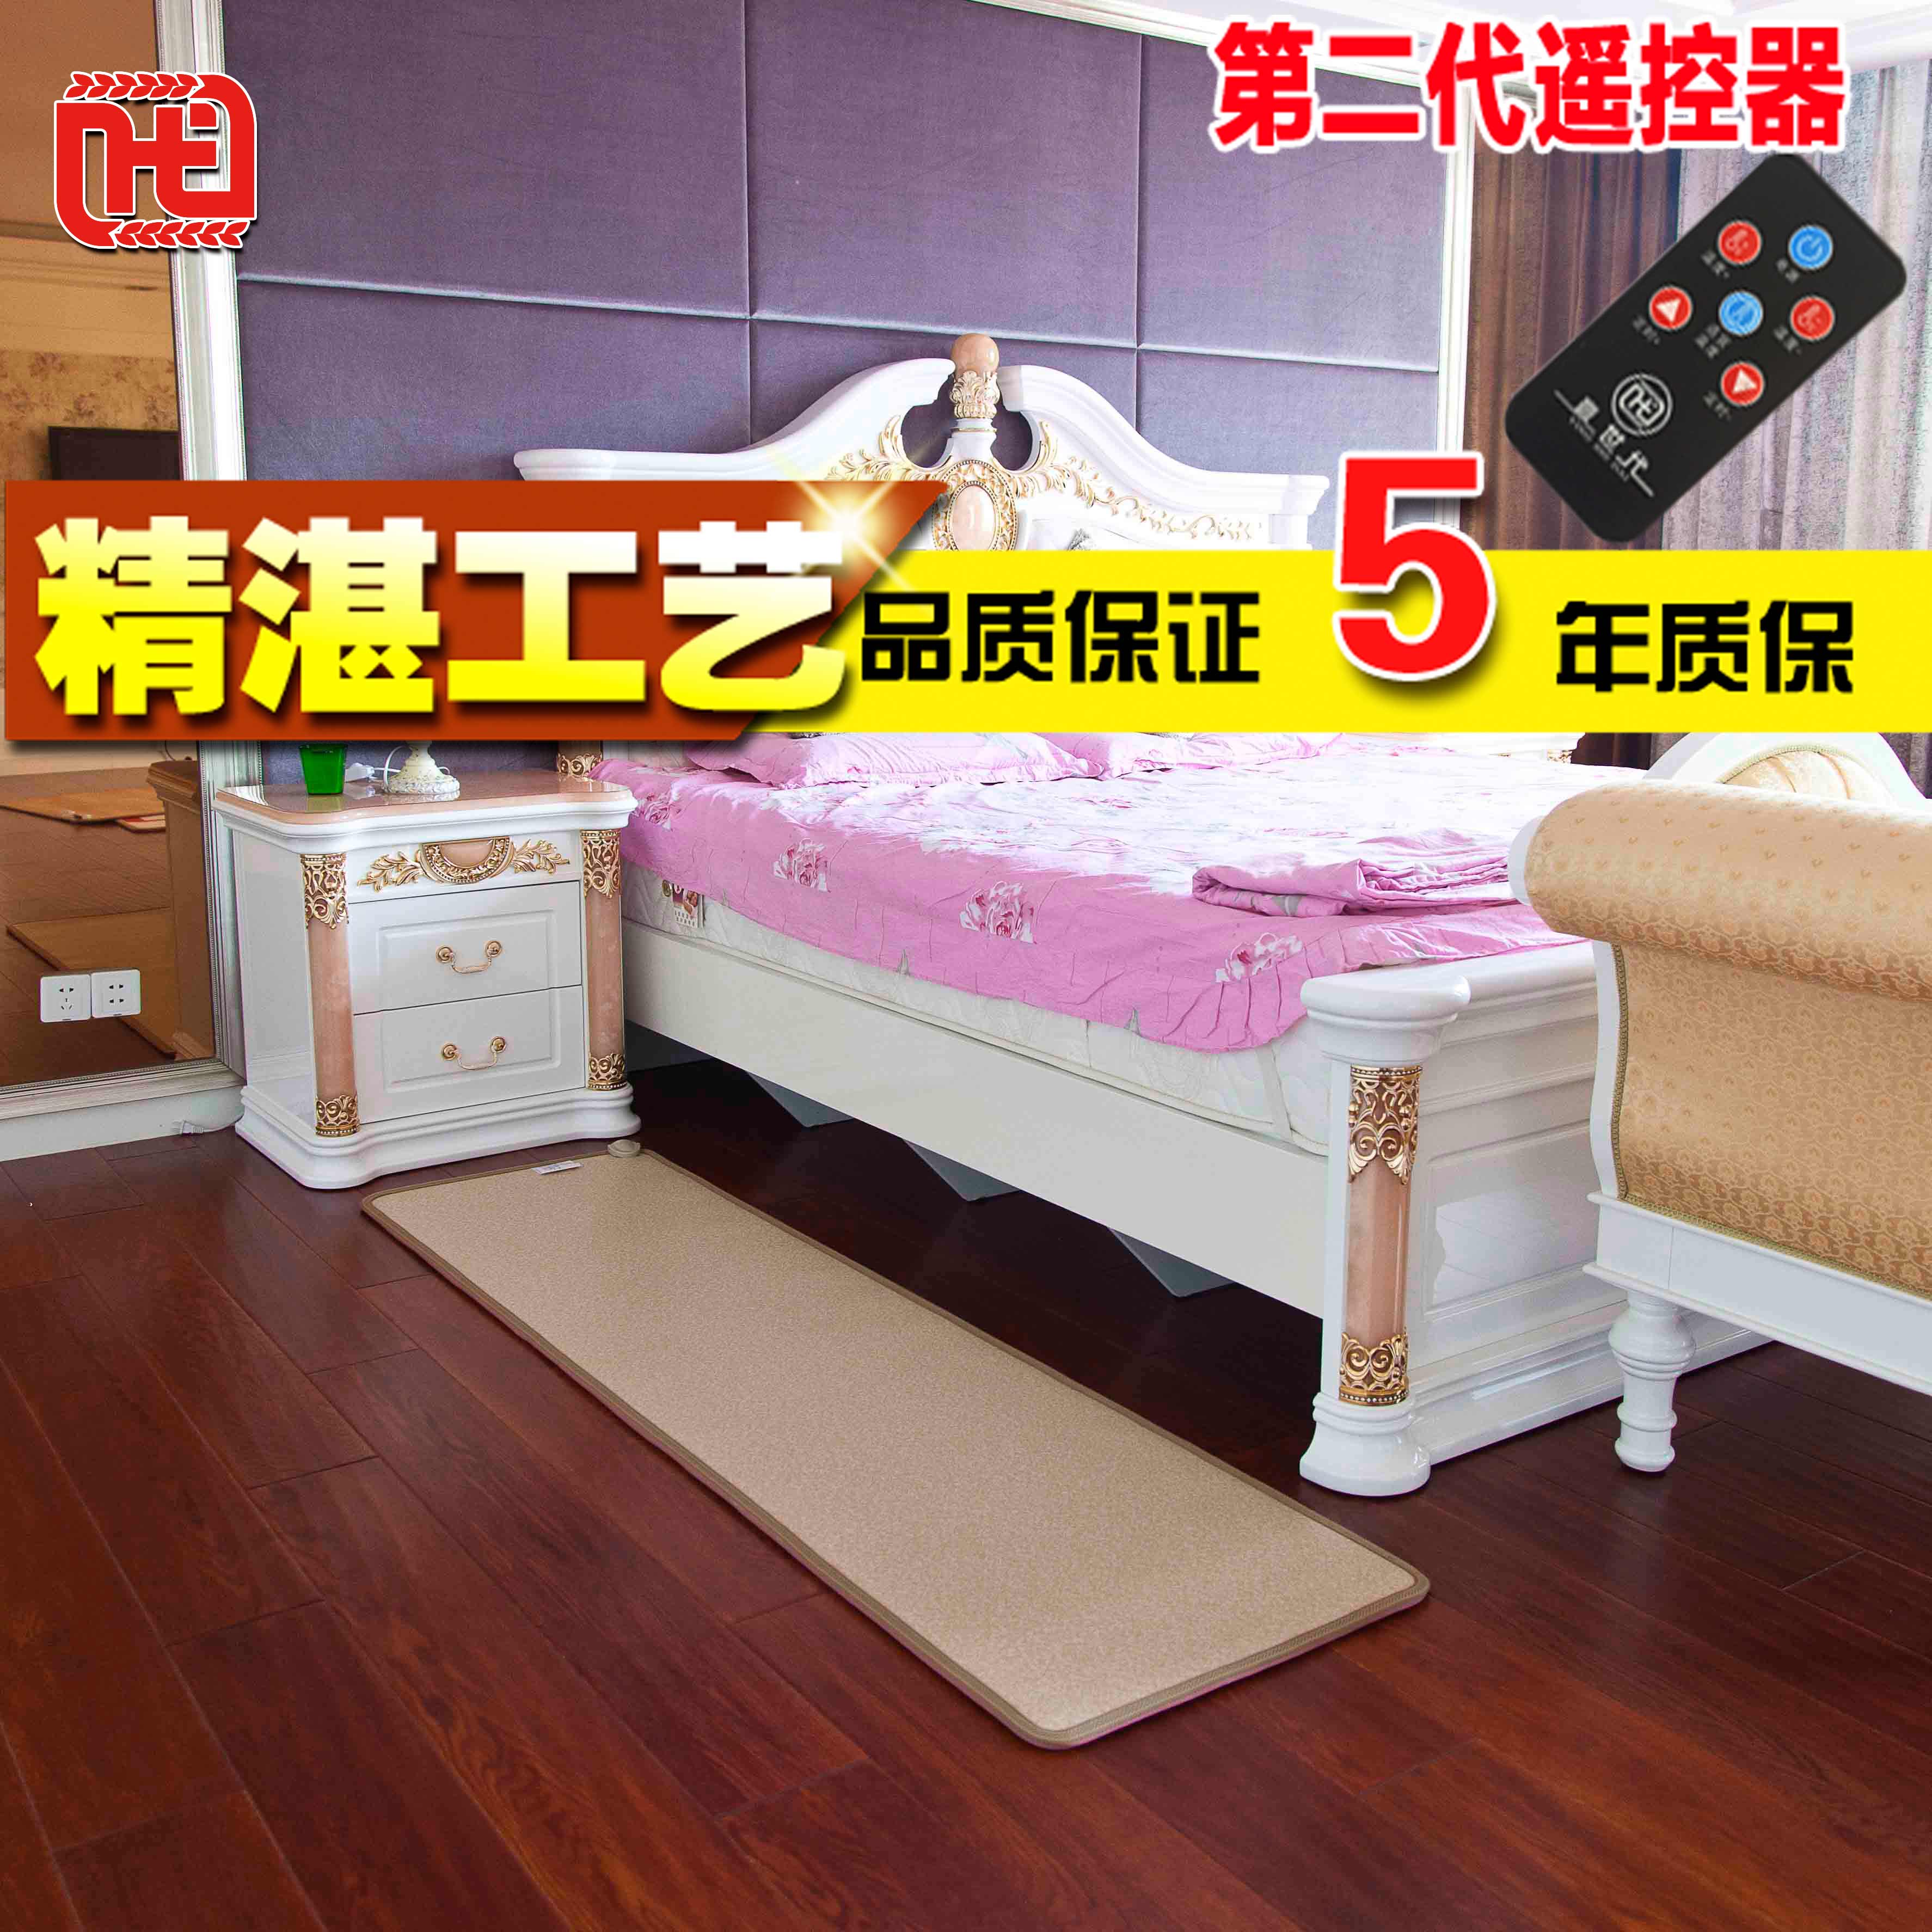 赢世代碳晶地暖垫 电热地毯 碳晶电热毯 韩国加热垫地热垫折扣优惠信息